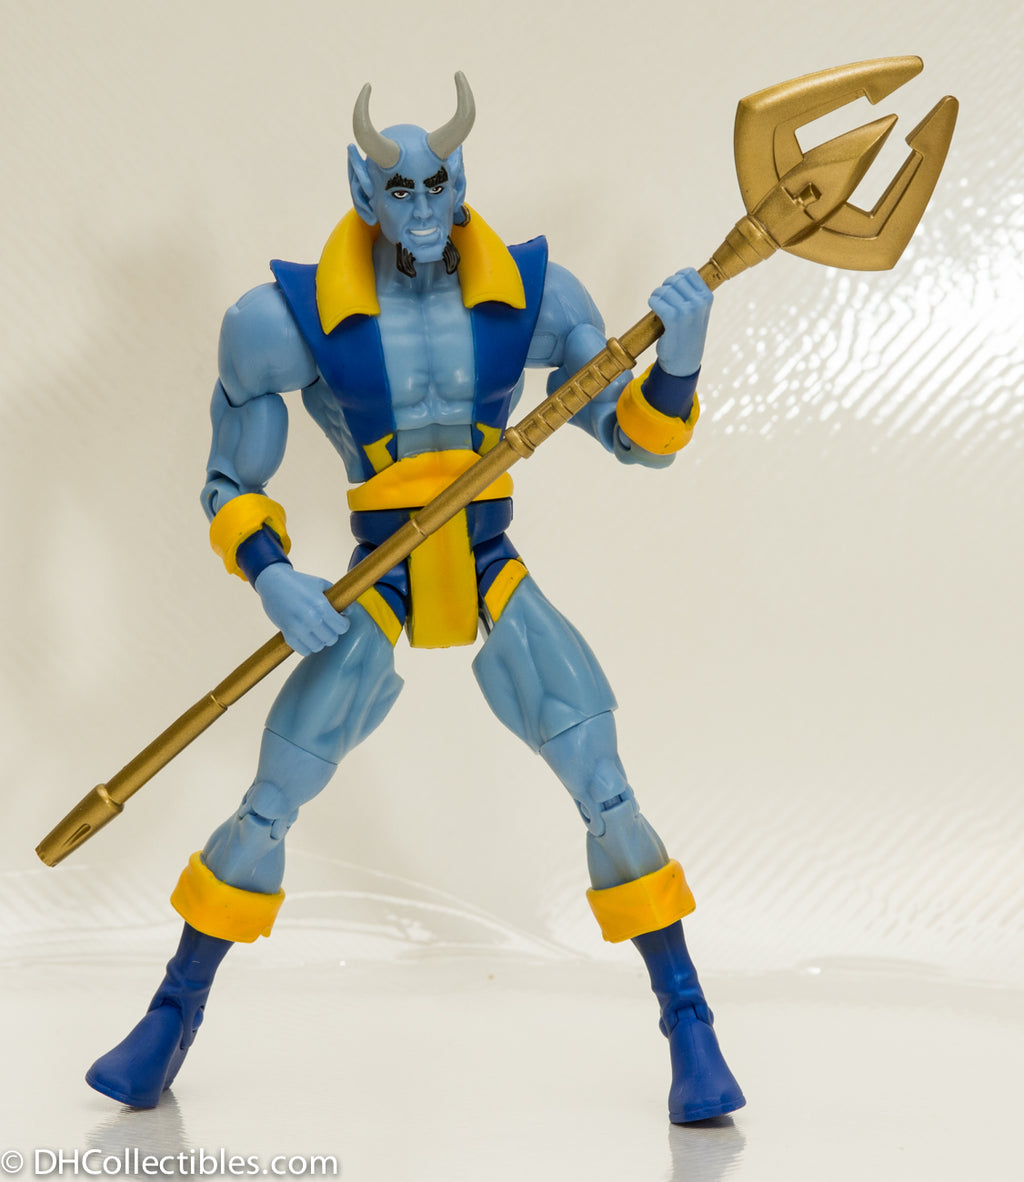 2009 DC Universe Classics Blue Devil Action Figure - Loose